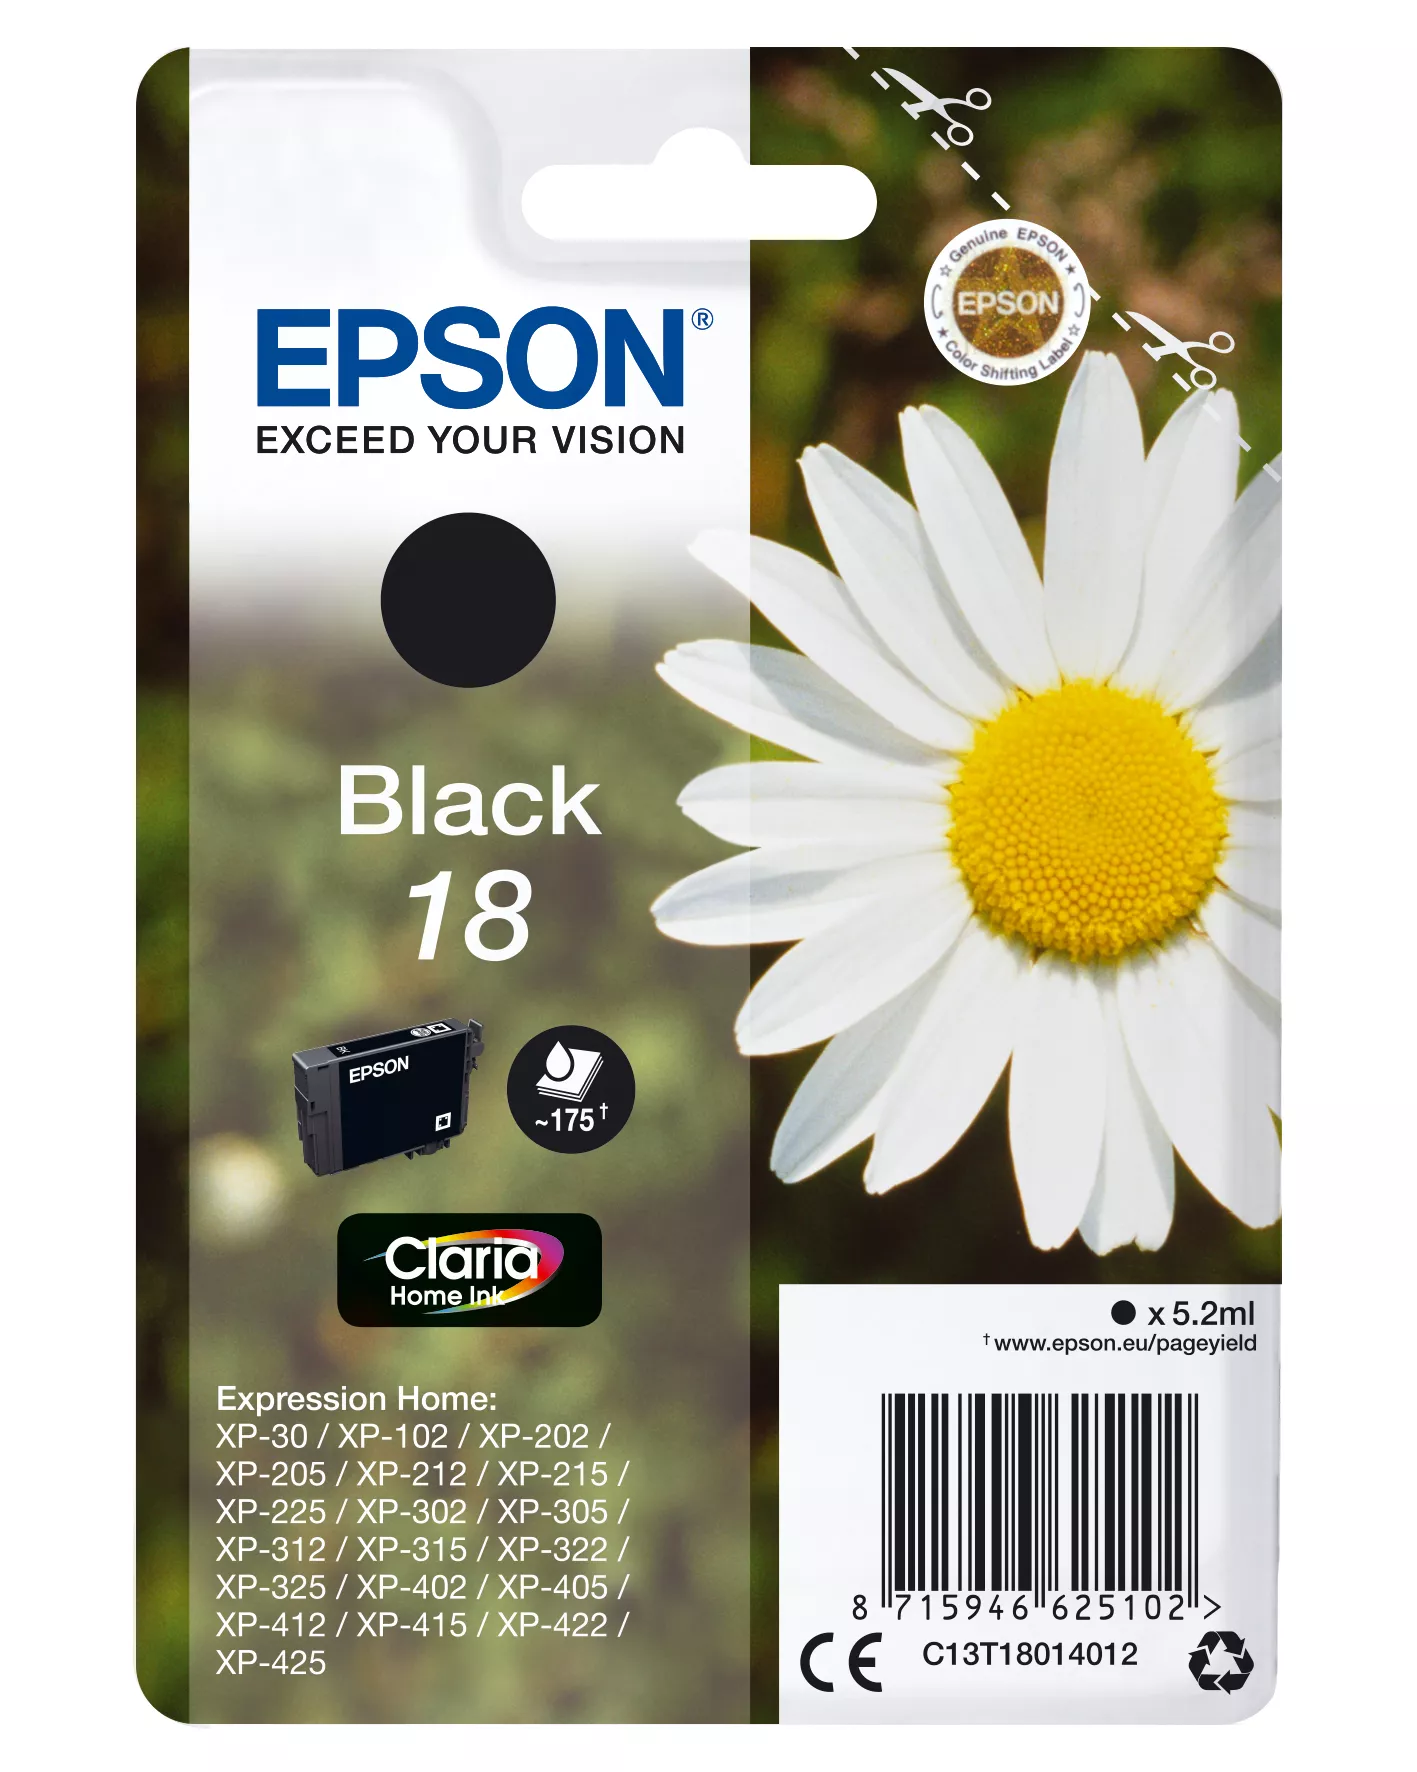 Vente EPSON 18 cartouche d encre noir capacité standard 5.2ml 175 au meilleur prix